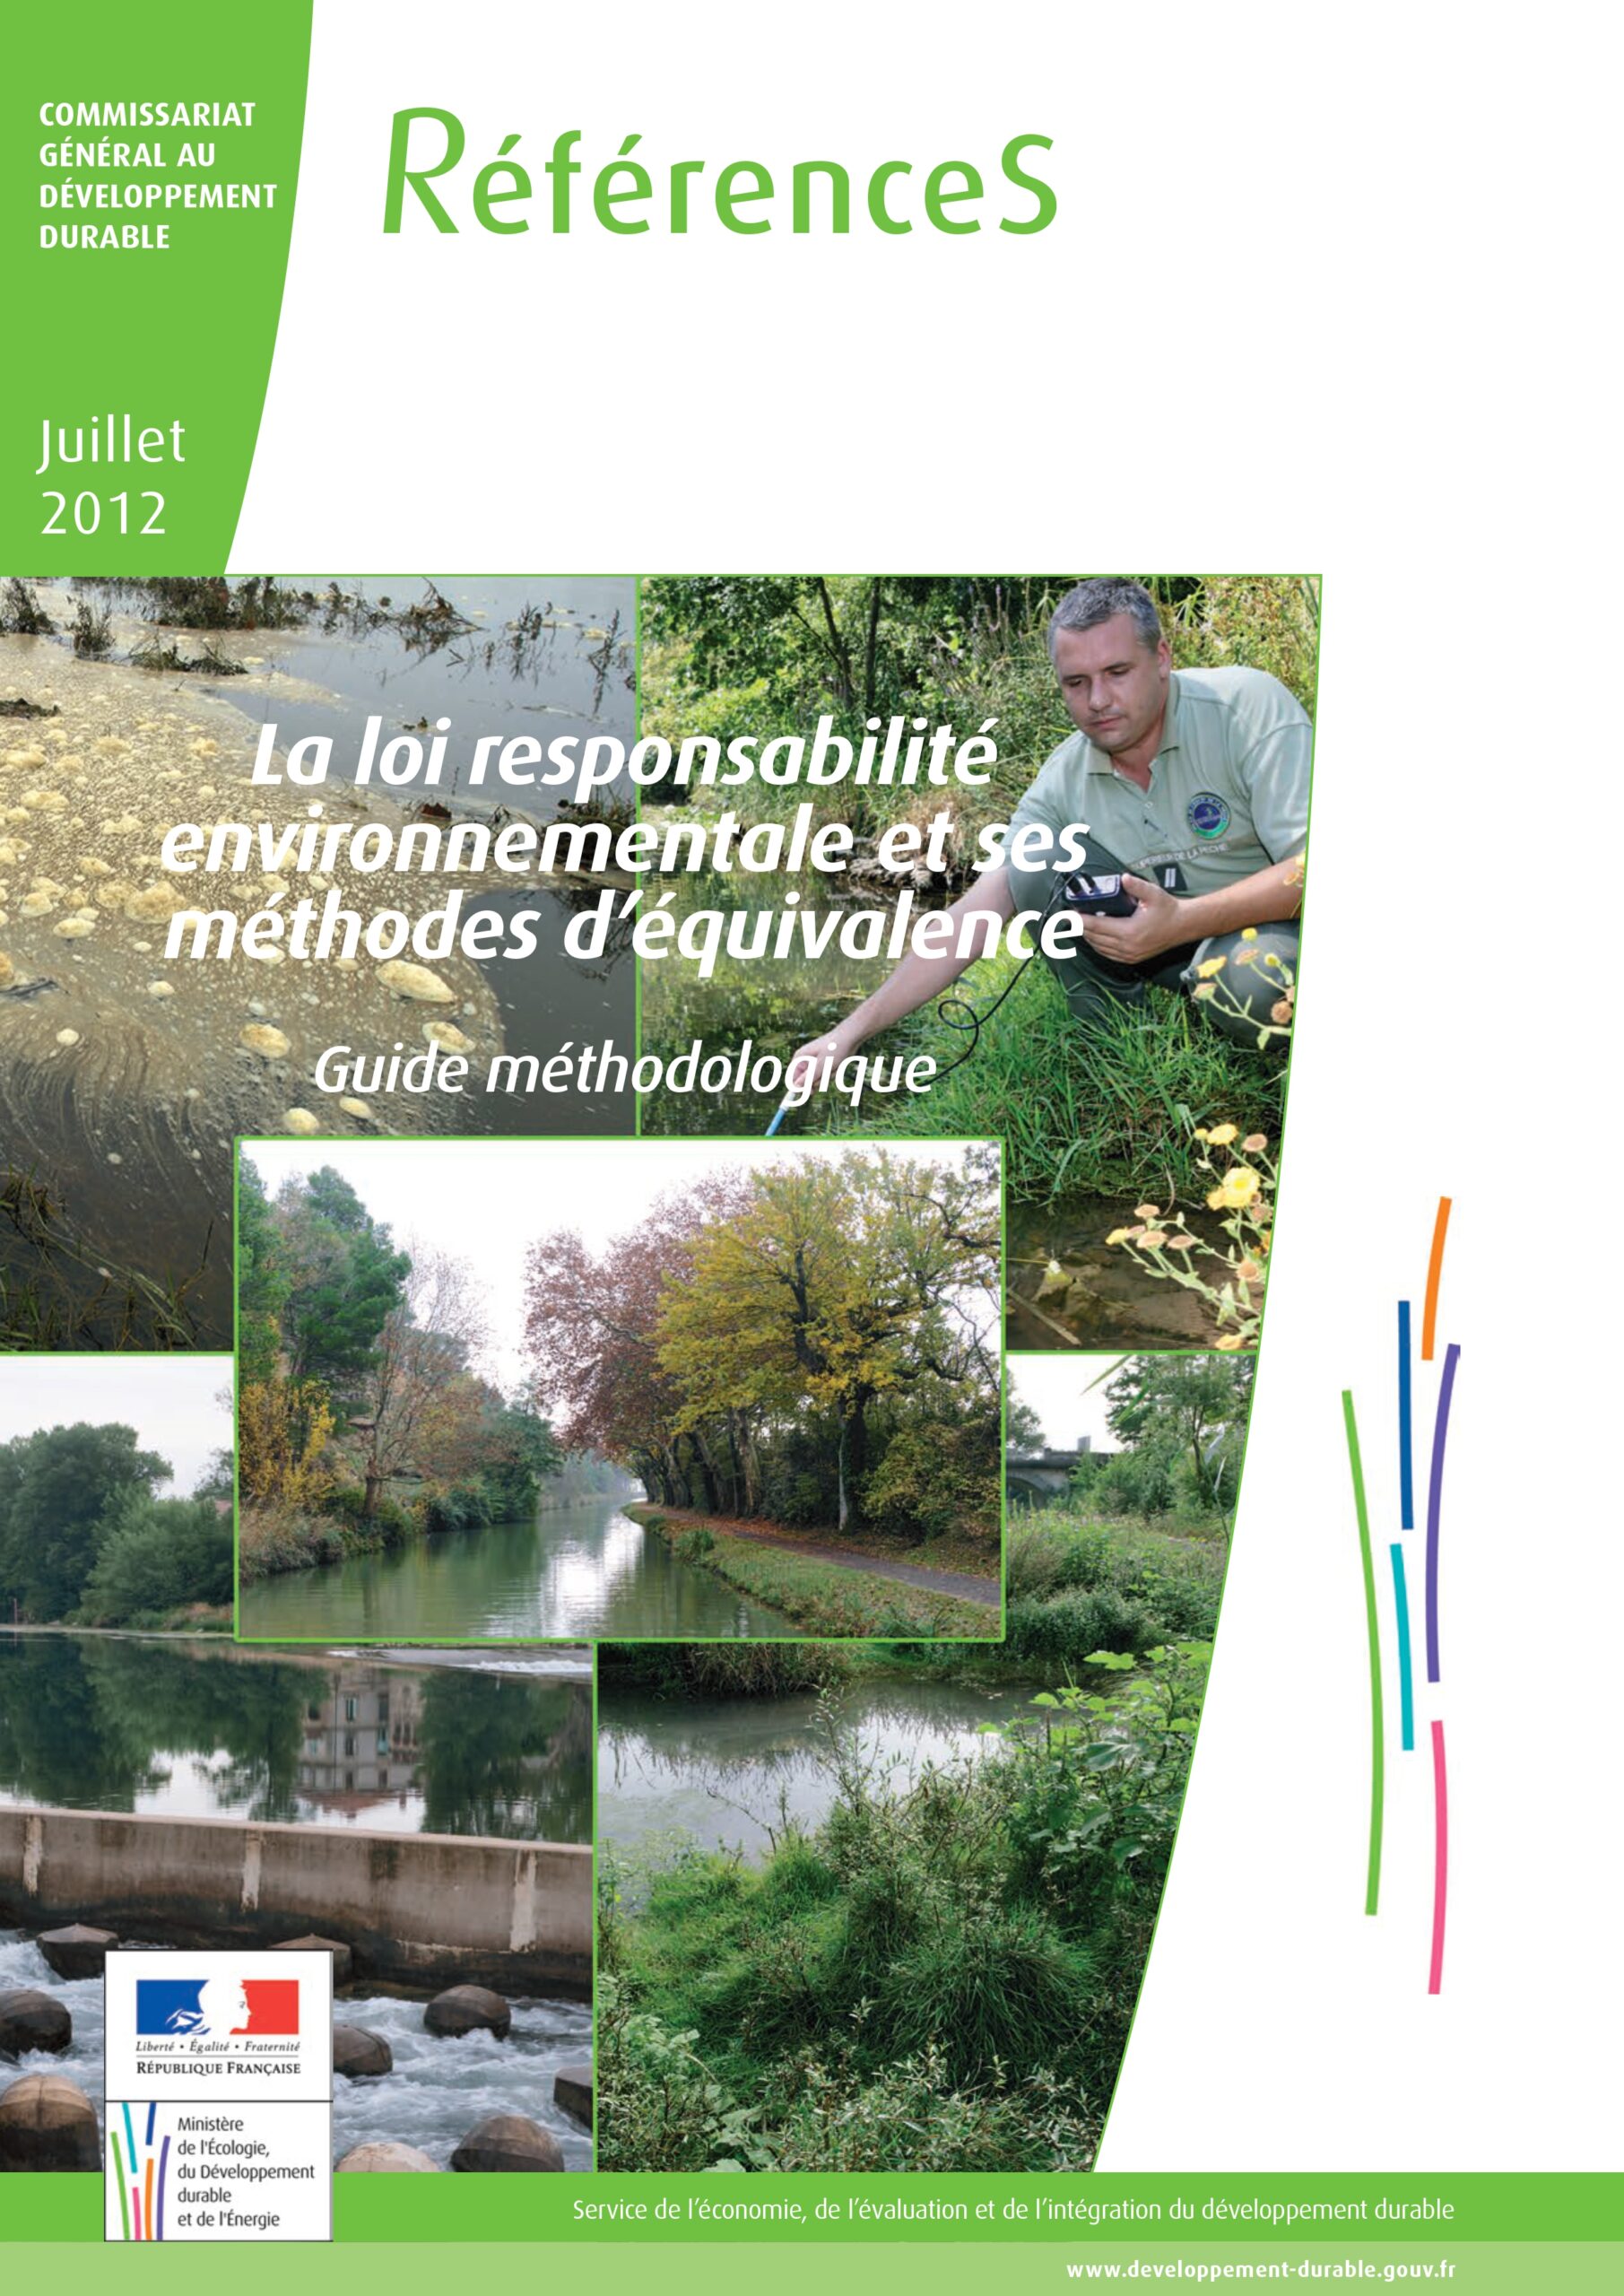 Couverture du Guide Responsabilité Environnementale du Commissariat général au développement durable